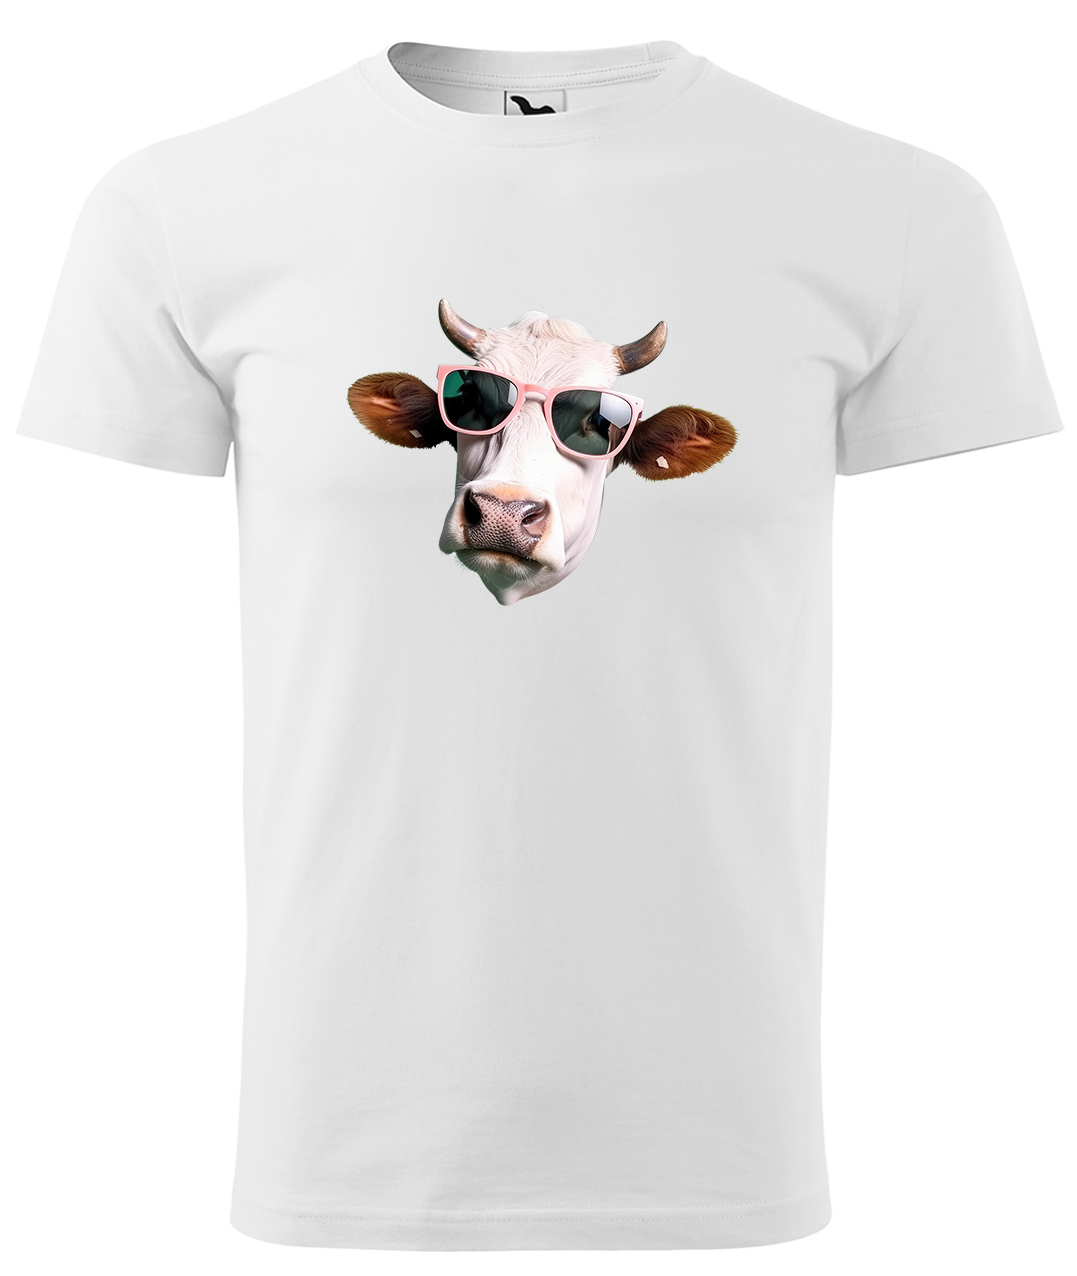 Dětské tričko s krávou - Kráva v brýlích Velikost: 10 let / 146 cm, Barva: Bílá (00), Délka rukávu: Krátký rukáv